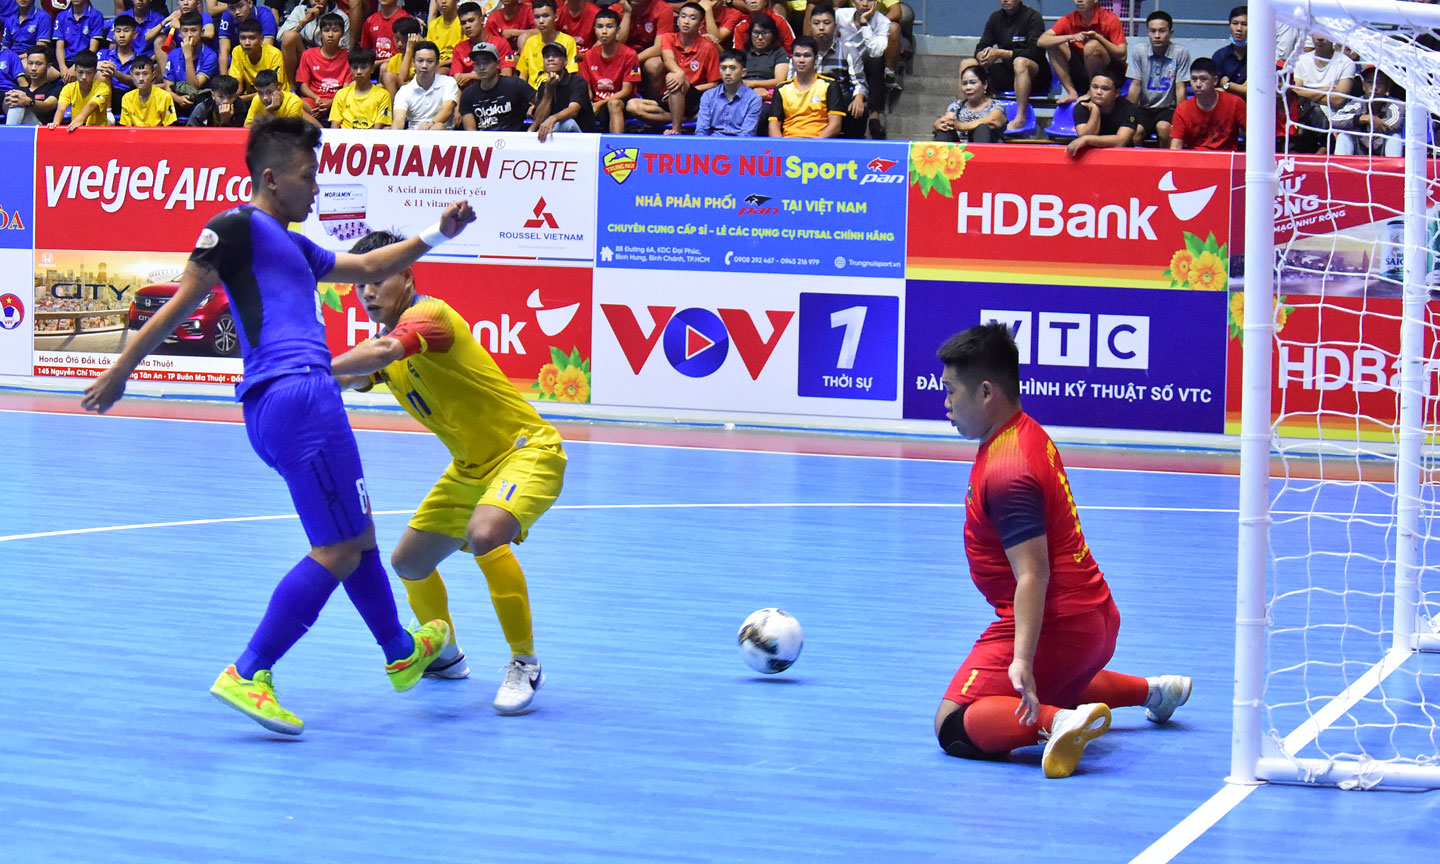 Phải đến những phút cuối cùng Thái Sơn Nam (xanh) mới có thể vượt qua được Quảng Nam để giành vé vào chơi trận chung kết.